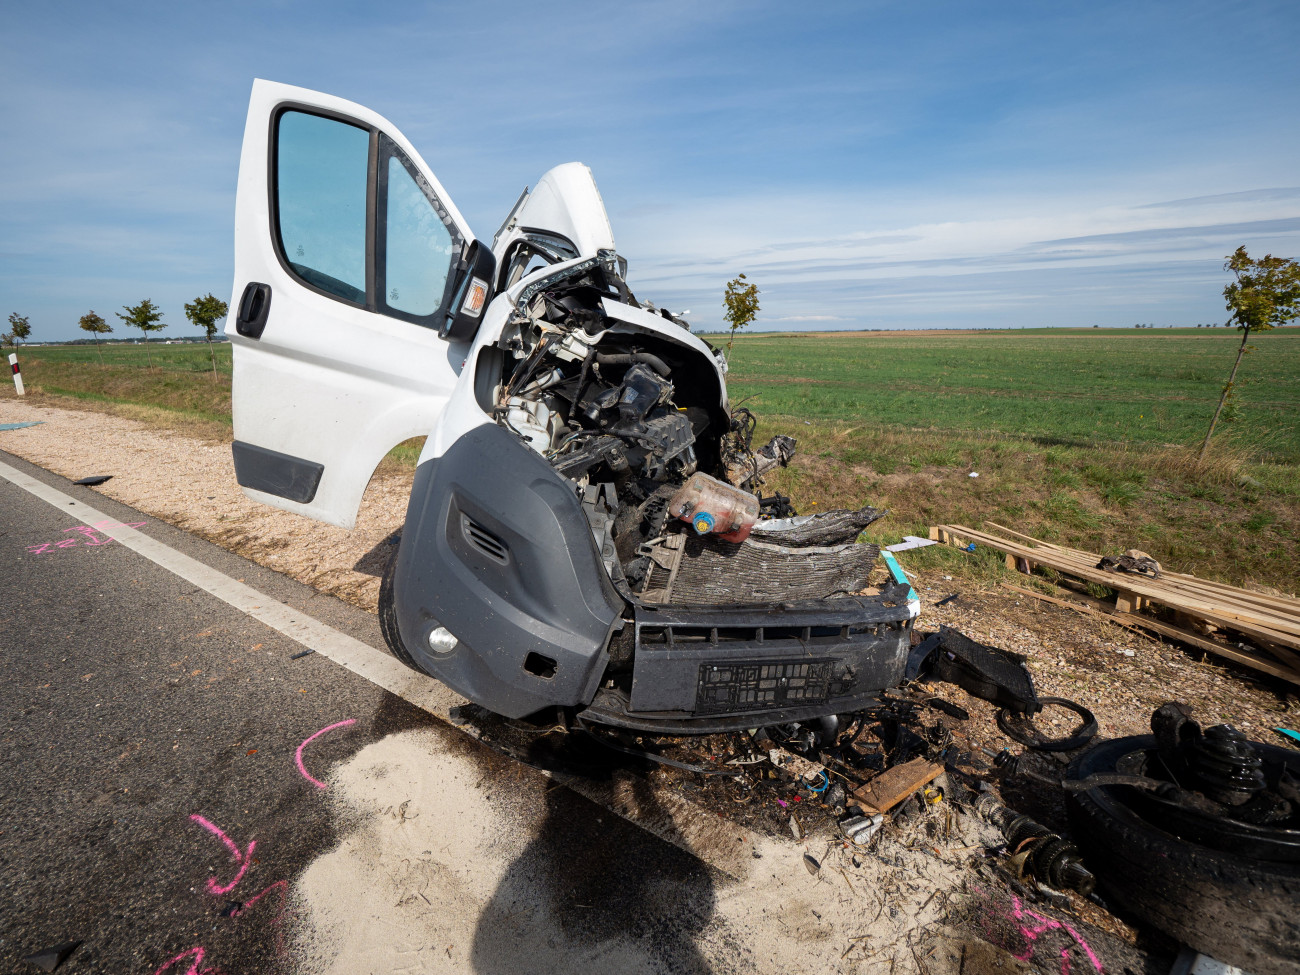 Felsőszentiván, 2021. szeptember 24.
Összeroncsolódott furgon az 55-ös úton Felsőszentiván és Tataháza között 2021. szeptember 24-én. A teherjármű összeütközött egy menetrend szerint közlekedő autóbusszal. A balesetben egy ember meghalt.
MTI/Donka Ferenc